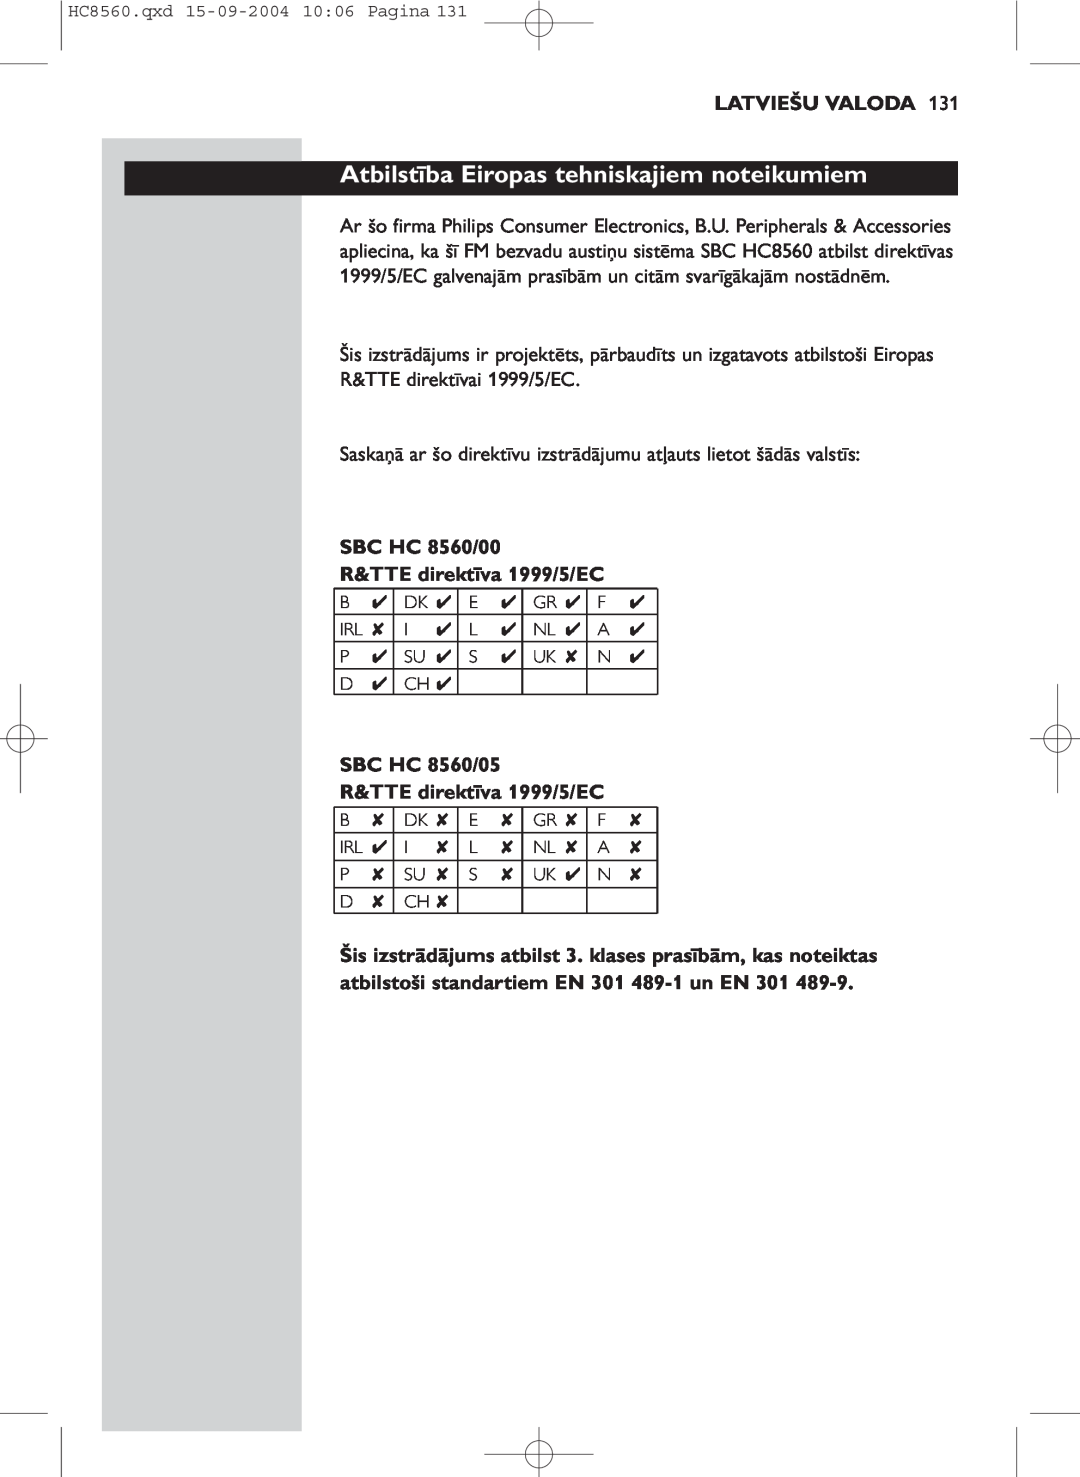 Philips manual Atbilstība Eiropas tehniskajiem noteikumiem, Latviešu Valoda, SBC HC 8560/00 R&TTE direktīva 1999/5/EC 